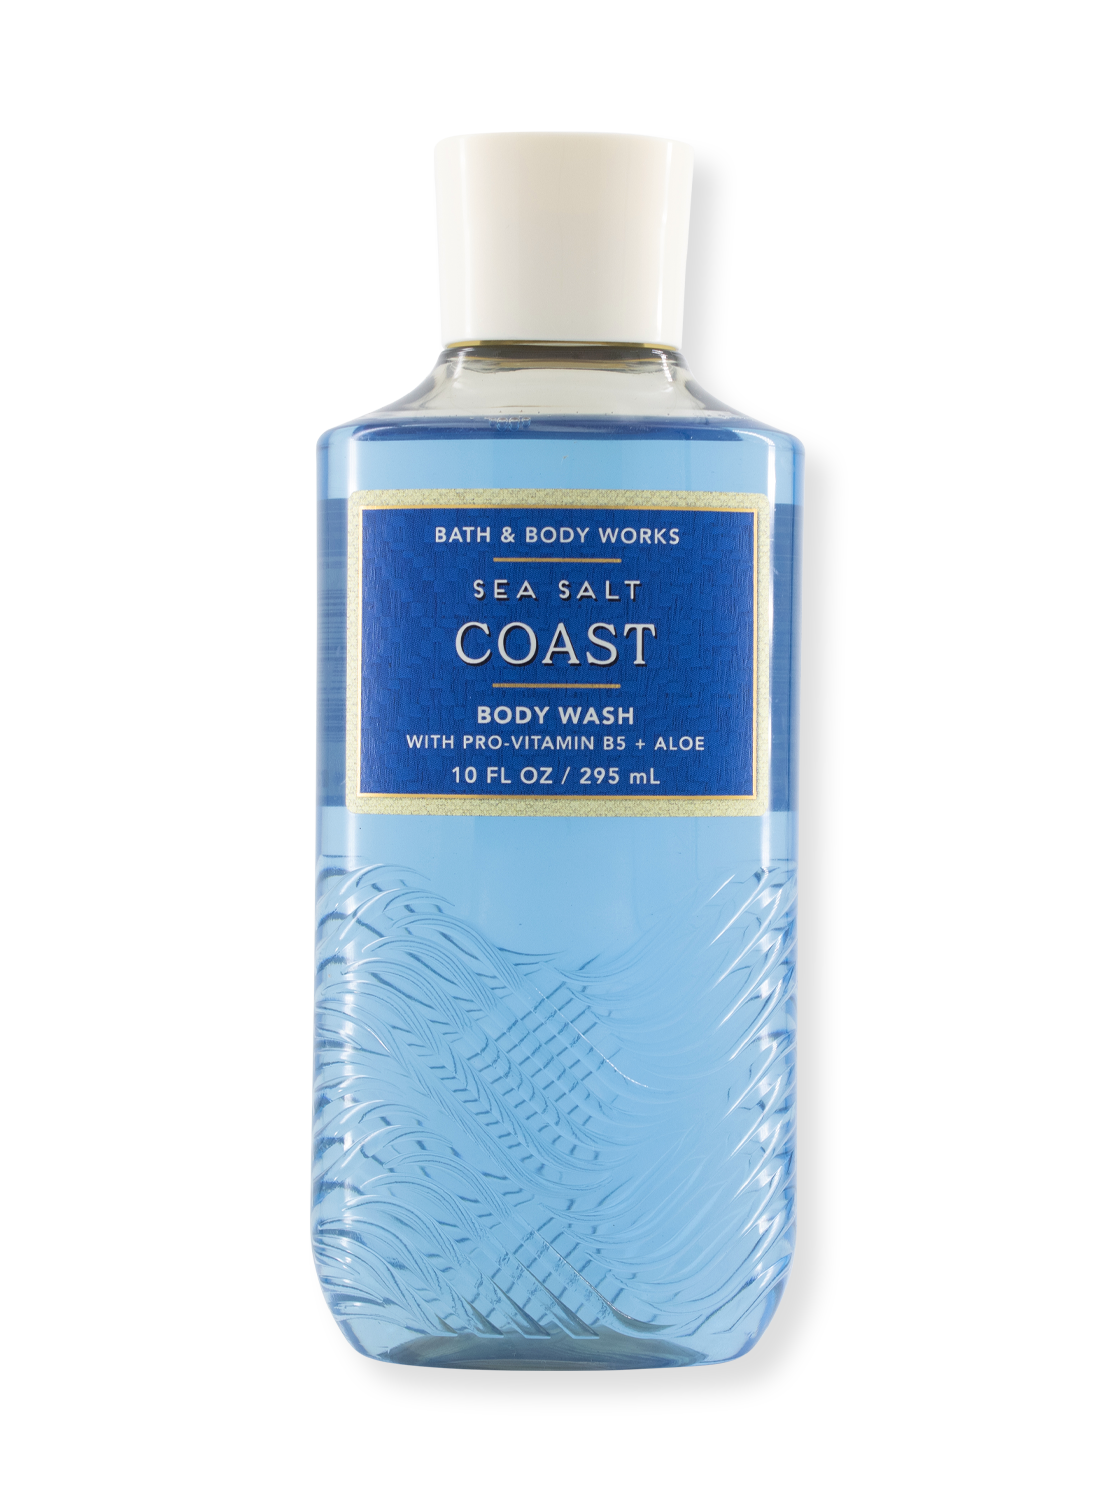 Duschgel/Body Wash - Sea Salt Coast - Limited Edition - 295ml